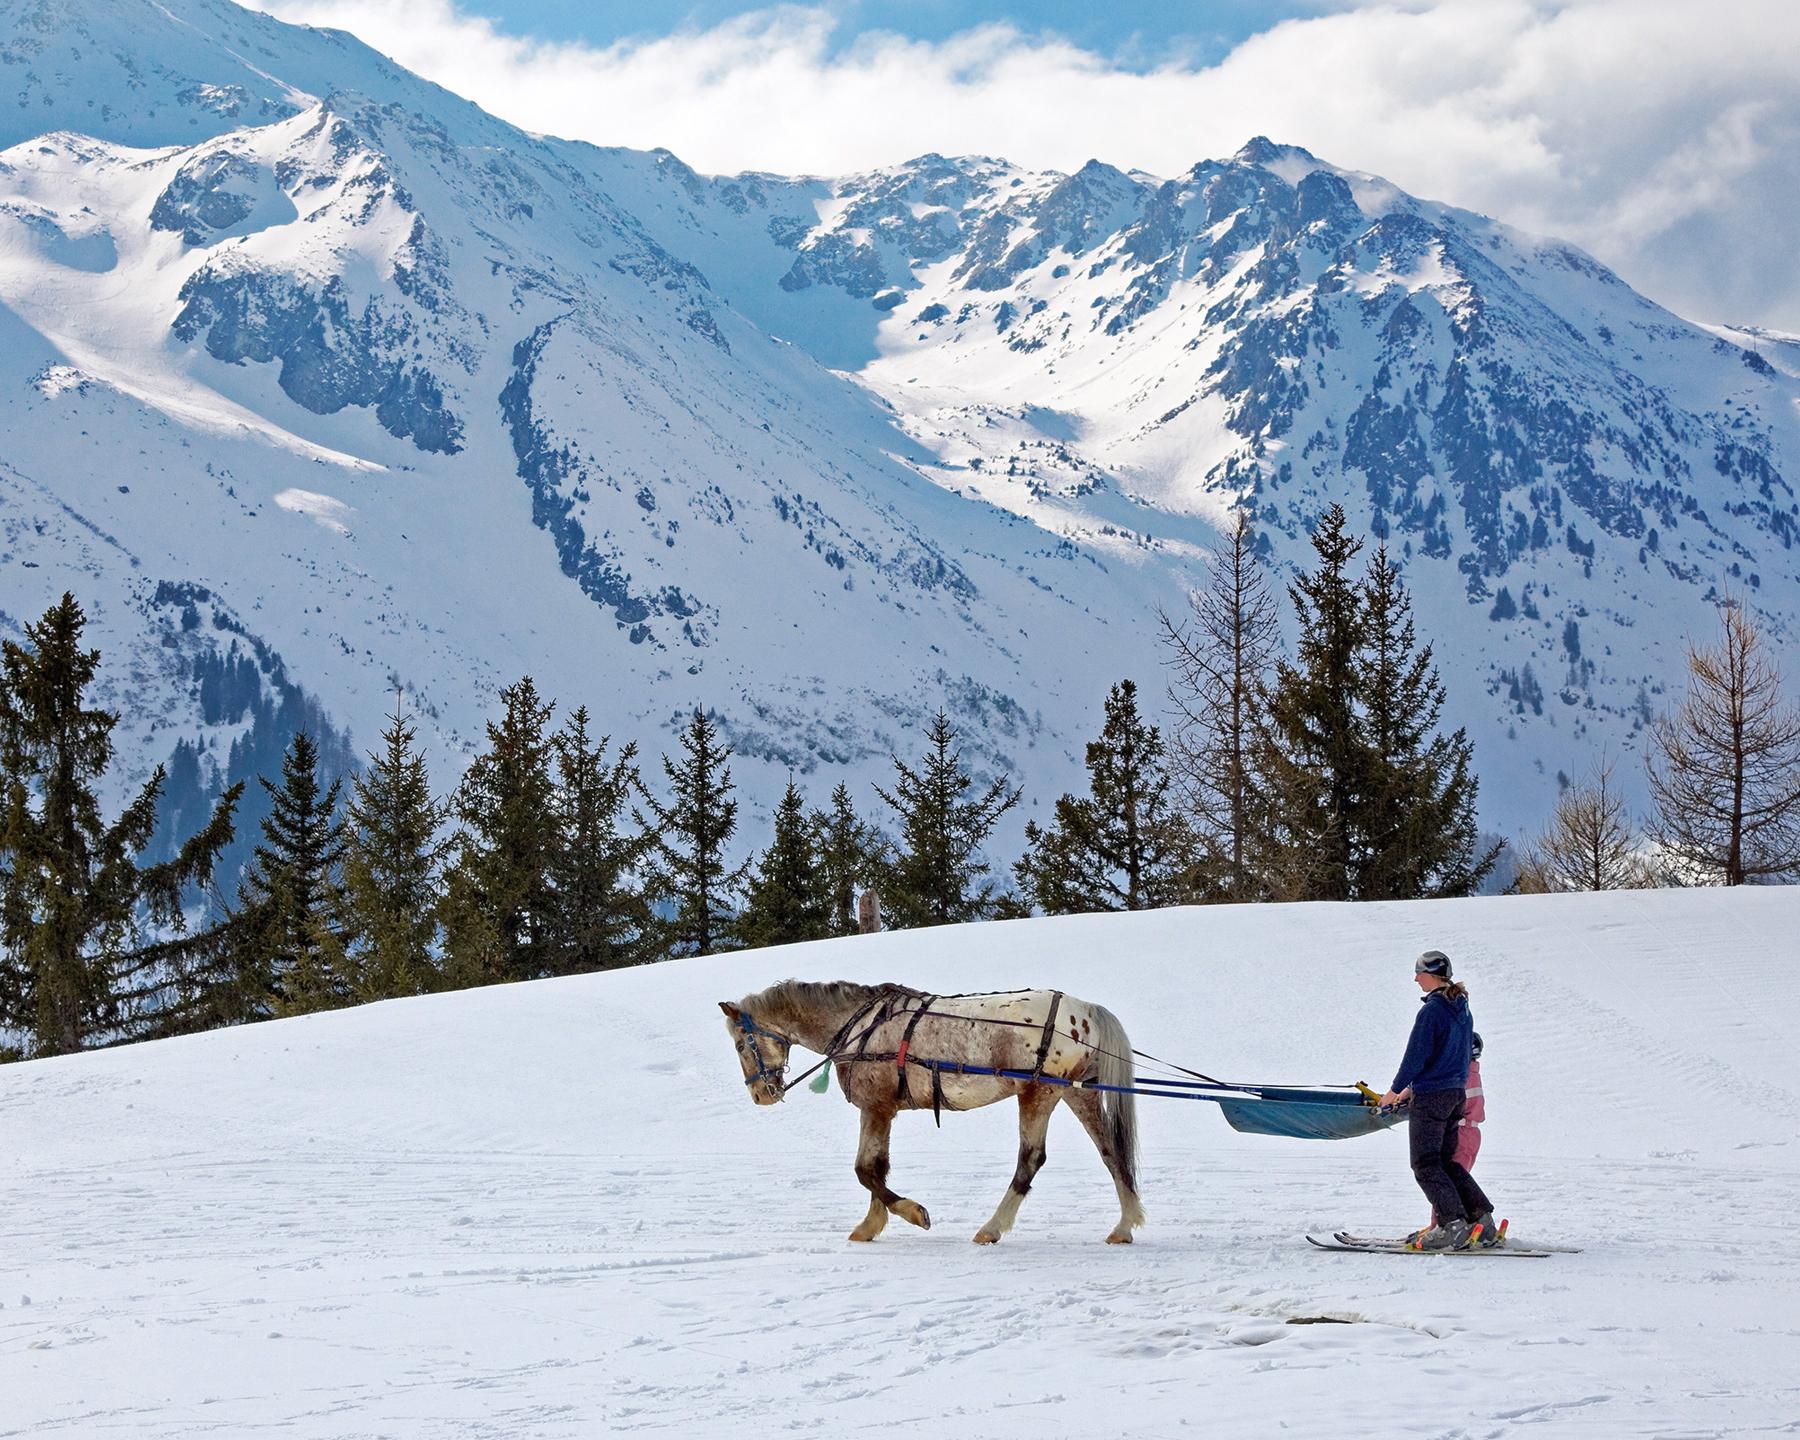 Une personne est tracté par un cheval sur la neige, il pratique du ski joëring